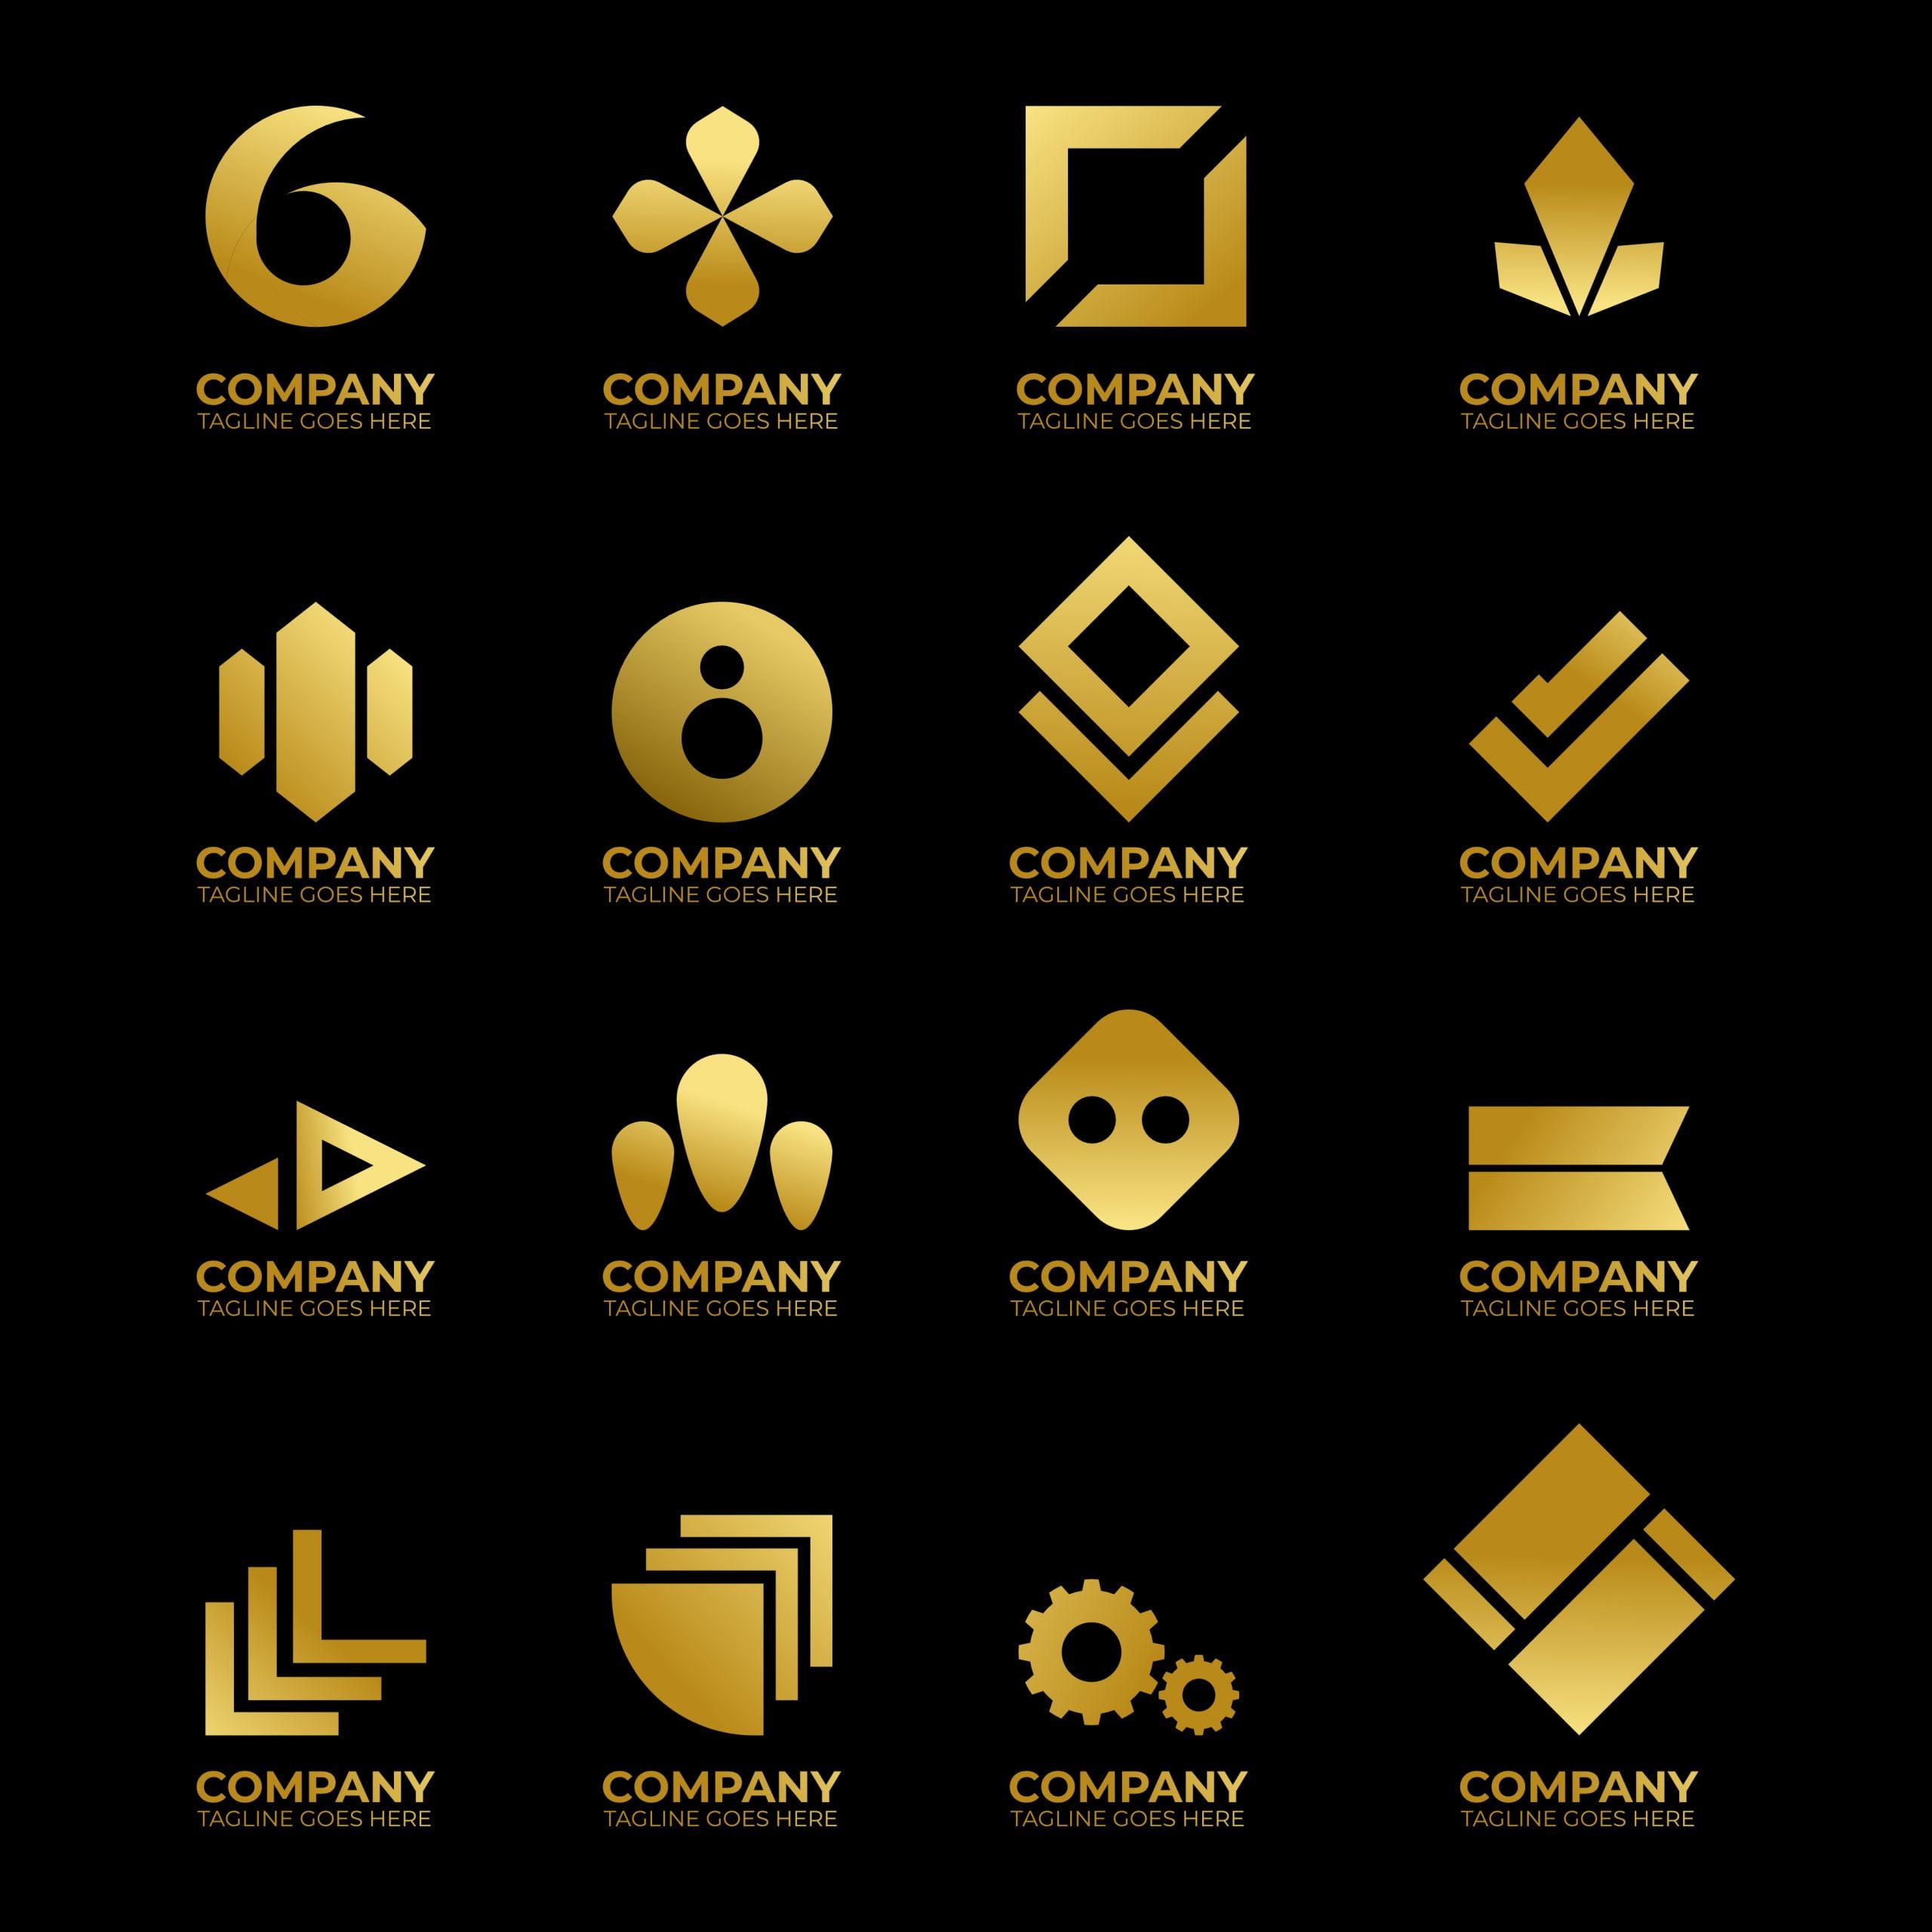 Free Logo Design Ideas For Business